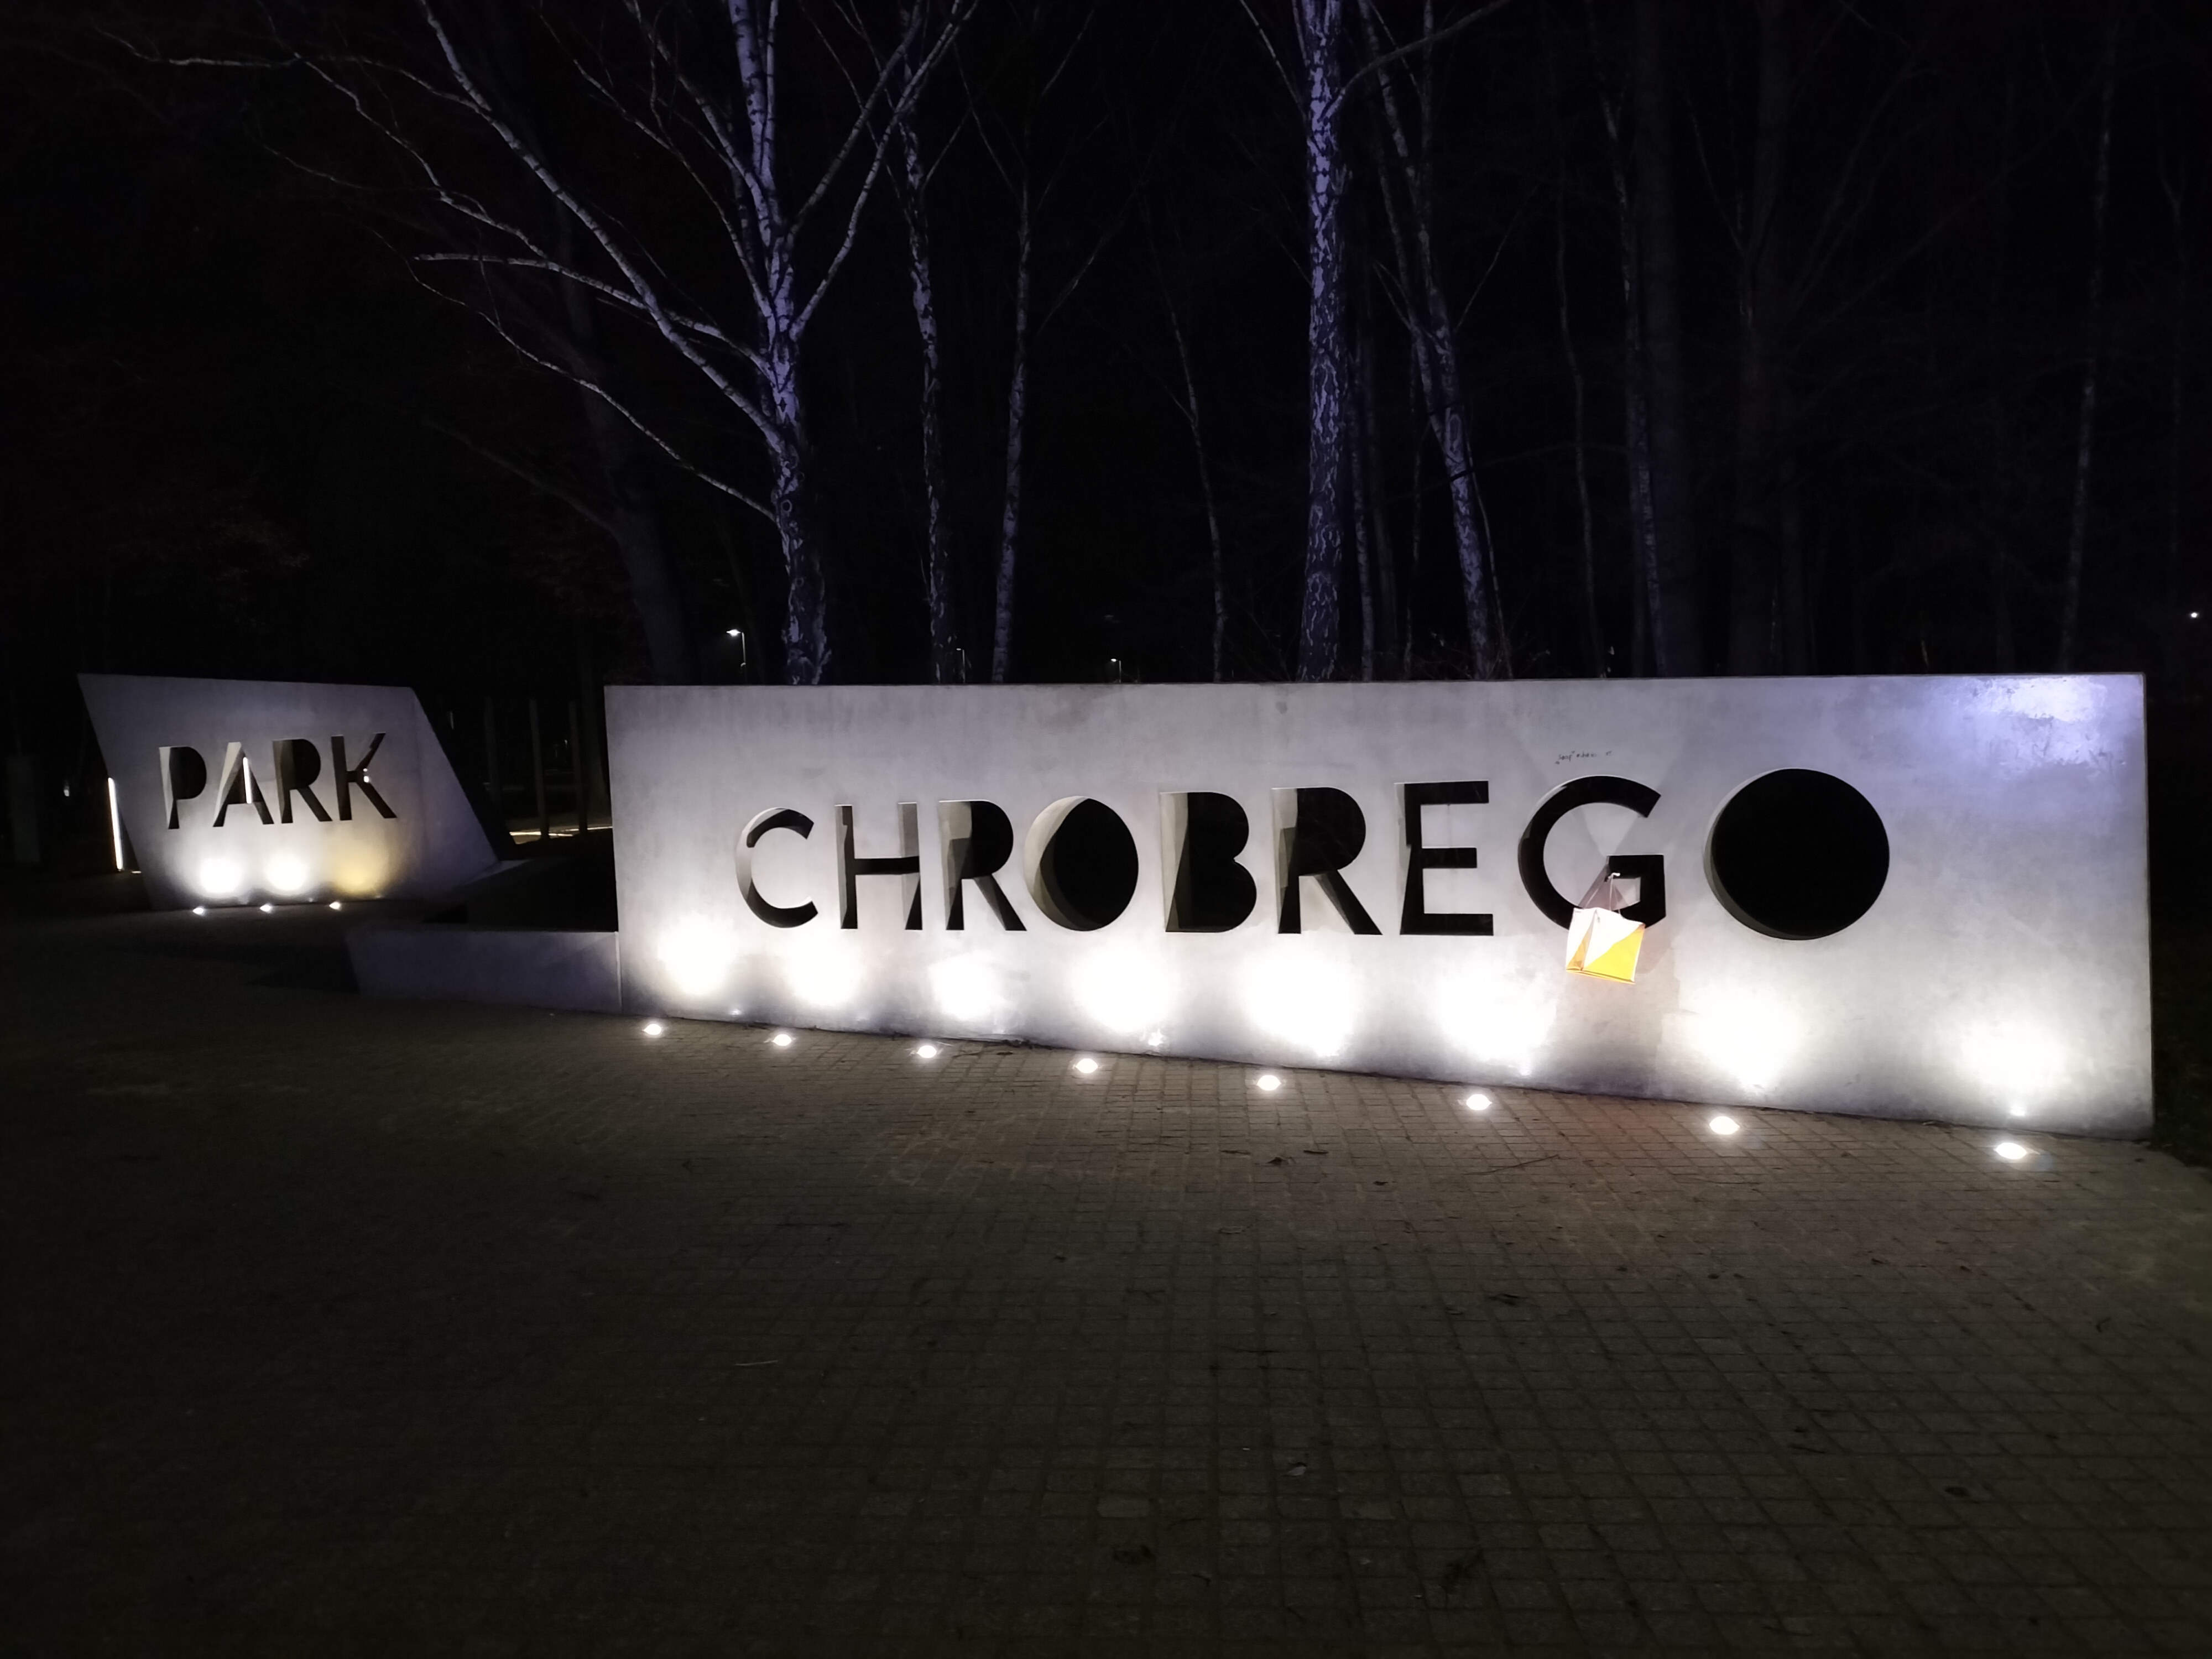 Wejście do Parku Chrobrego